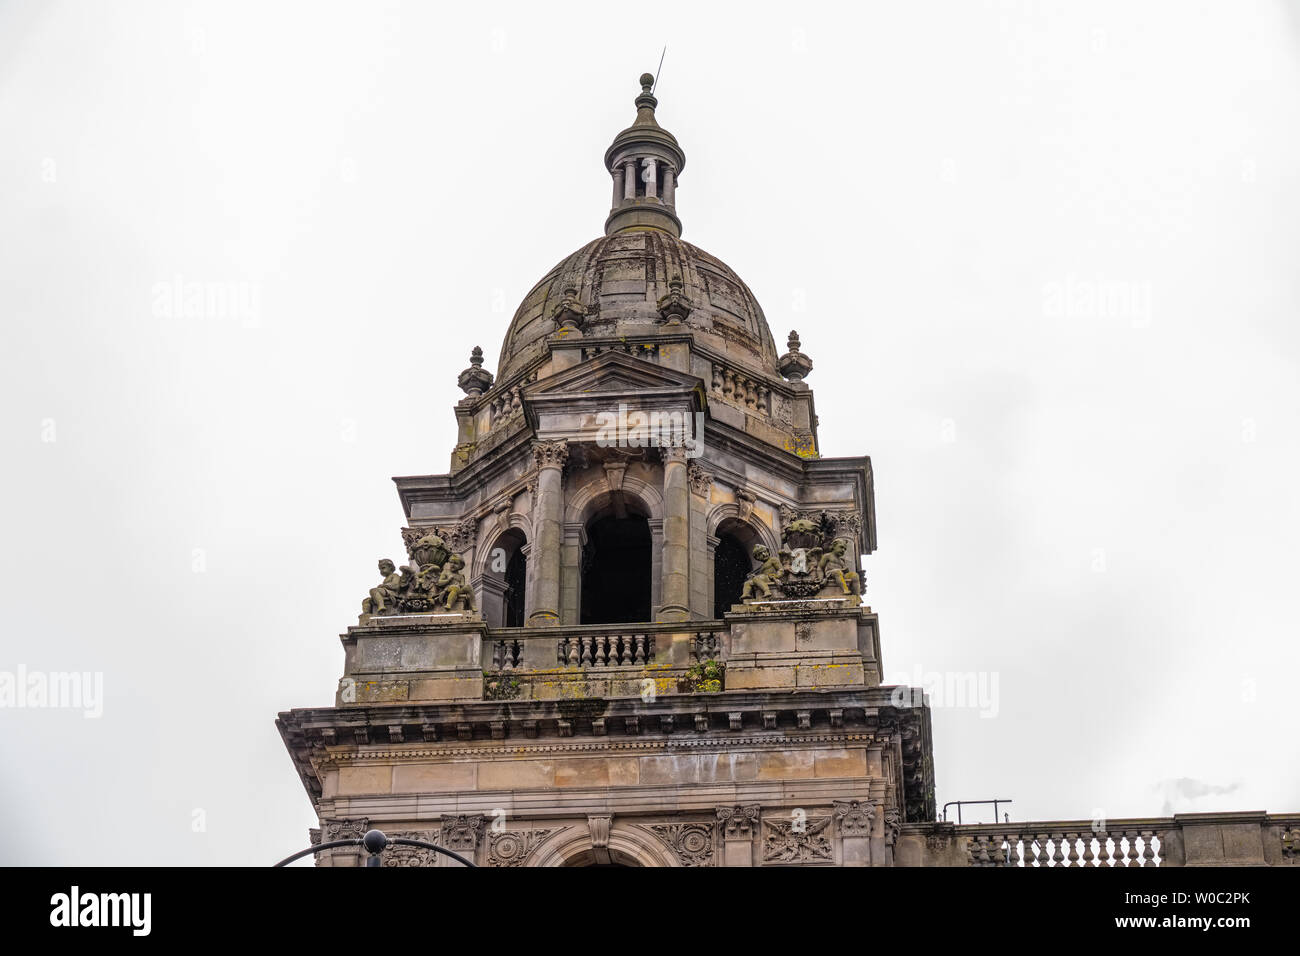 Glasgow, Scotland, UK - 22 juin 2019 : Architecture impressionnante à la recherche jusqu'à l'un des Glasgow City Chambers clochers en pierre et de nombreuses sculptures sur pierre. Banque D'Images